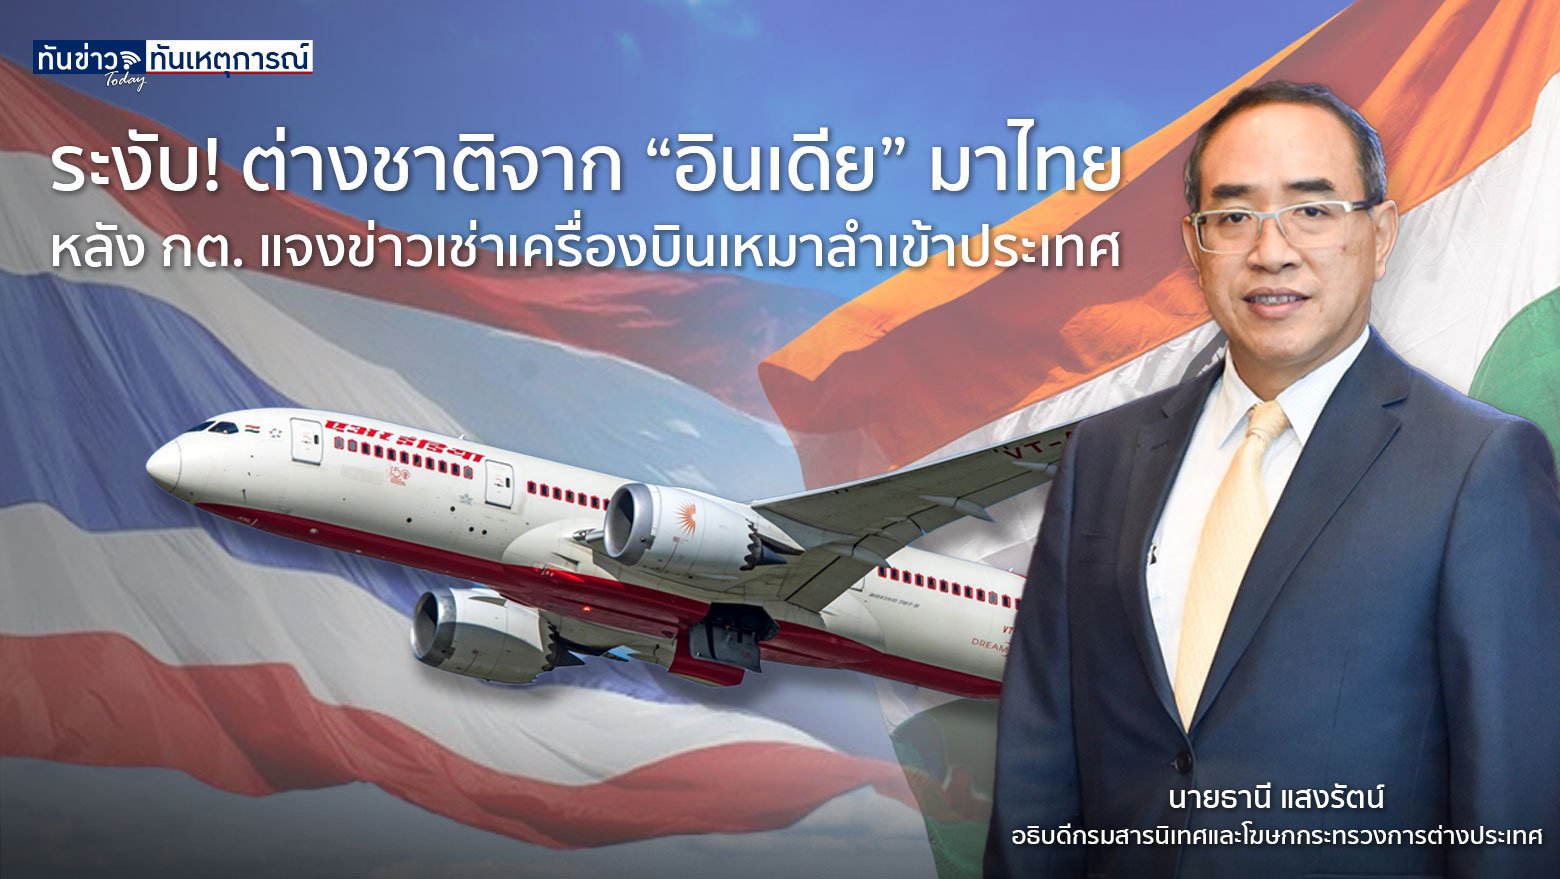 ระงับ! ต่างชาติจาก “อินเดีย” มาไทย หลัง กต. แจงข่าวเช่าเครื่องบินเหมาลำเข้าประเทศ